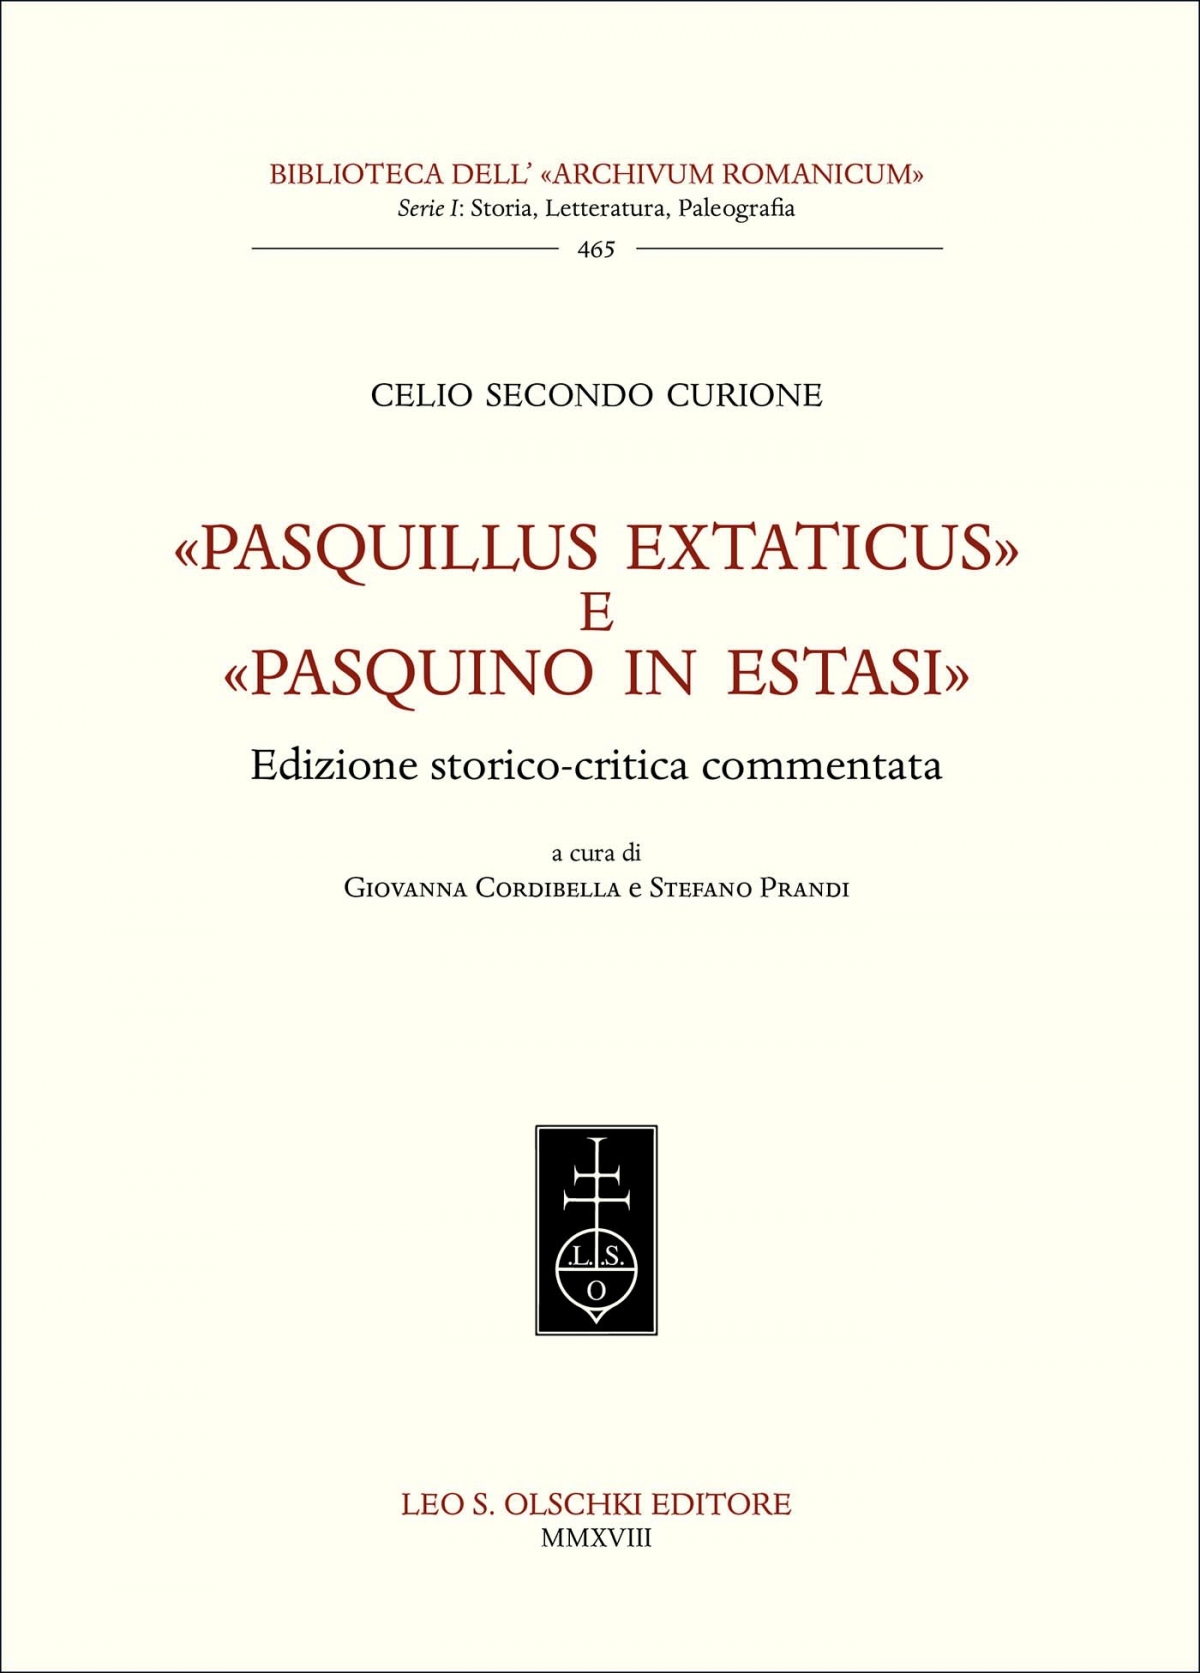 «Pasquillus extaticus» e «Pasquino in estasi»